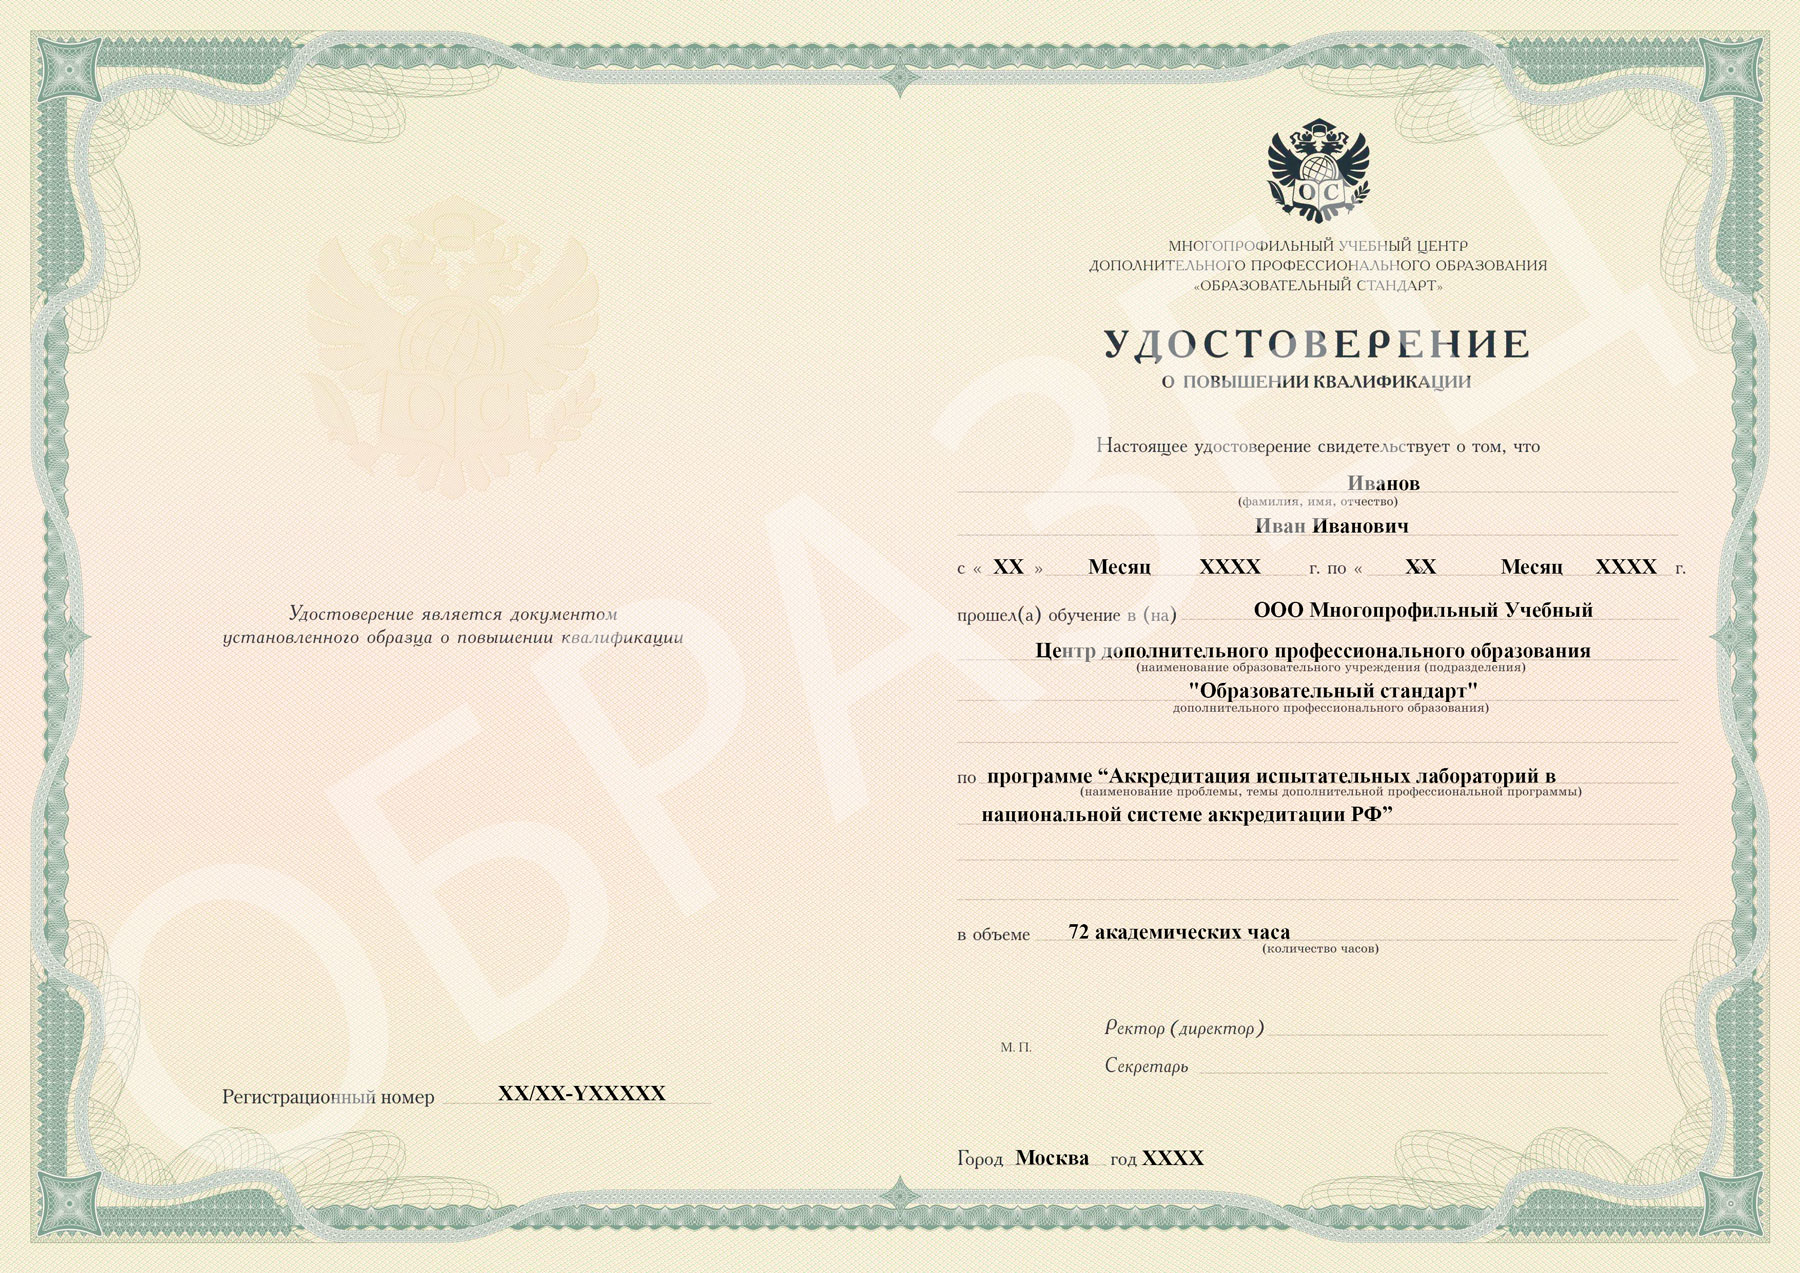 Аккредитация испытательных лабораторий в национальной системе аккредитации РФ образец удостоверения